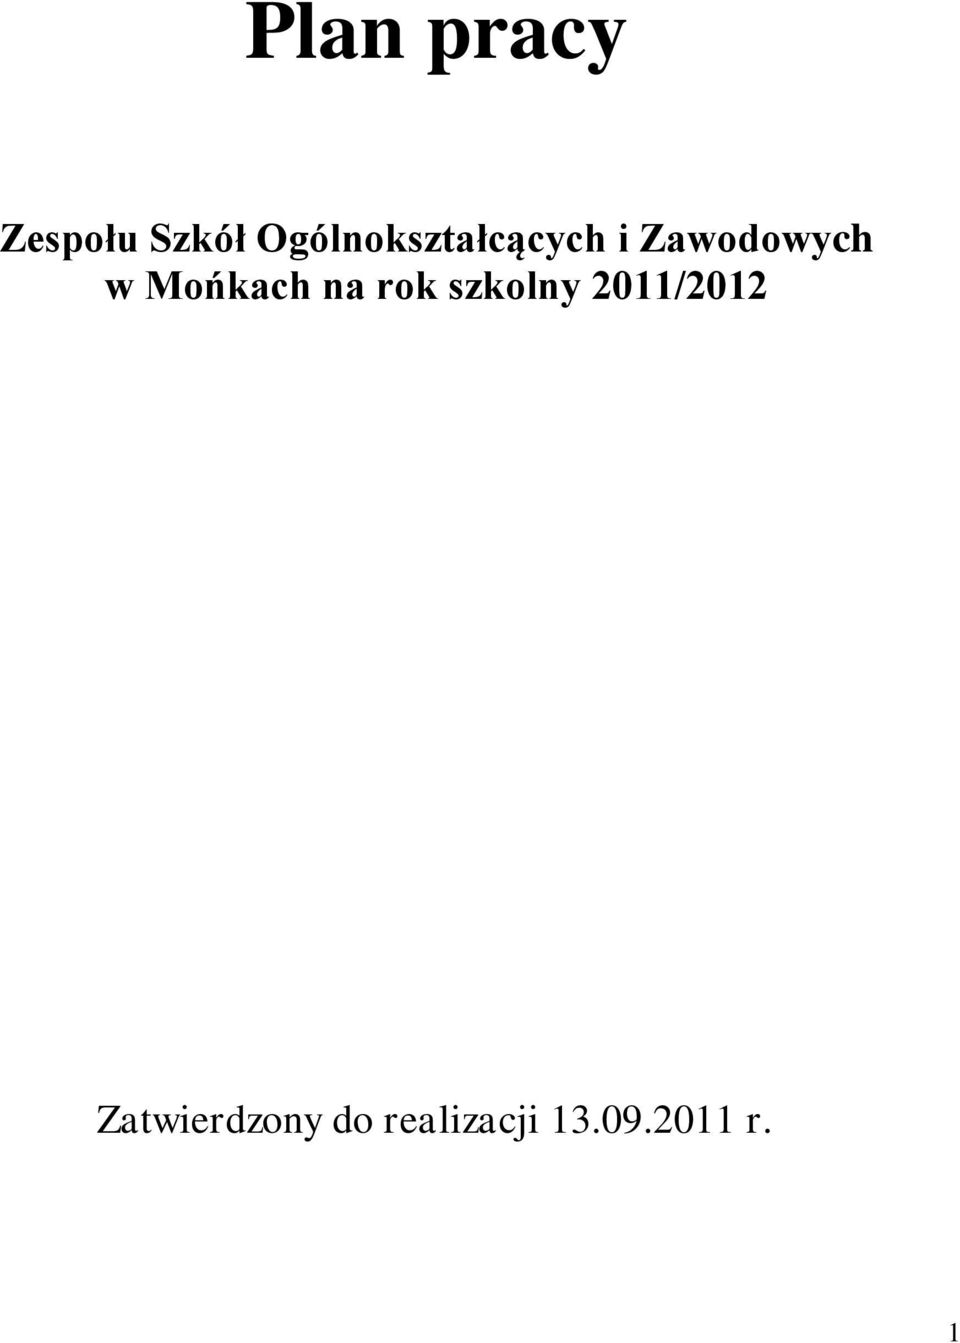 Mońkach na rok szkolny 2011/2012